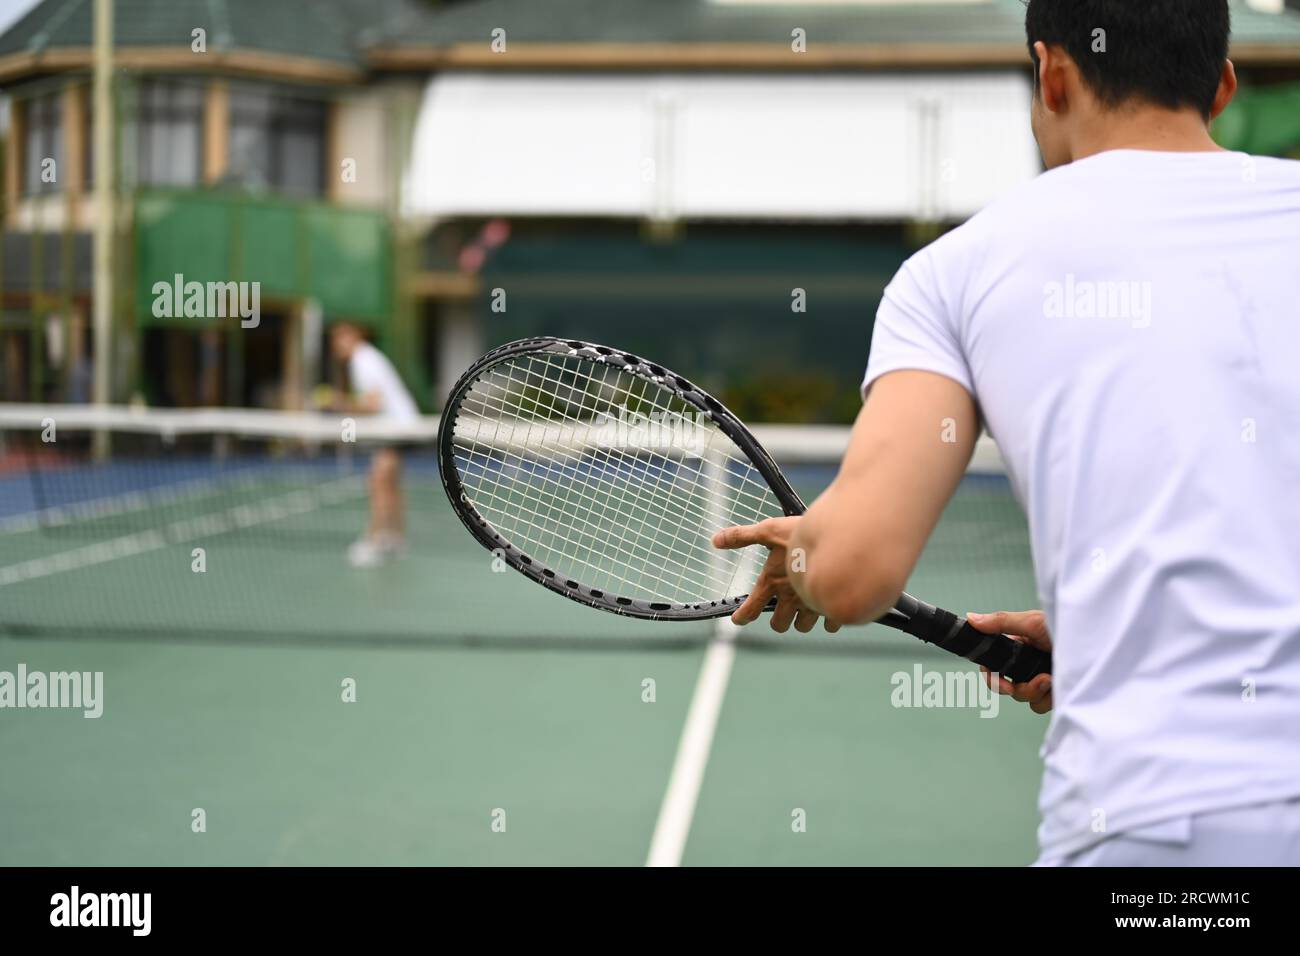 Joueur de tennis homme debout en position prête à recevoir un service, pratiquant pour la compétition sur un court Banque D'Images